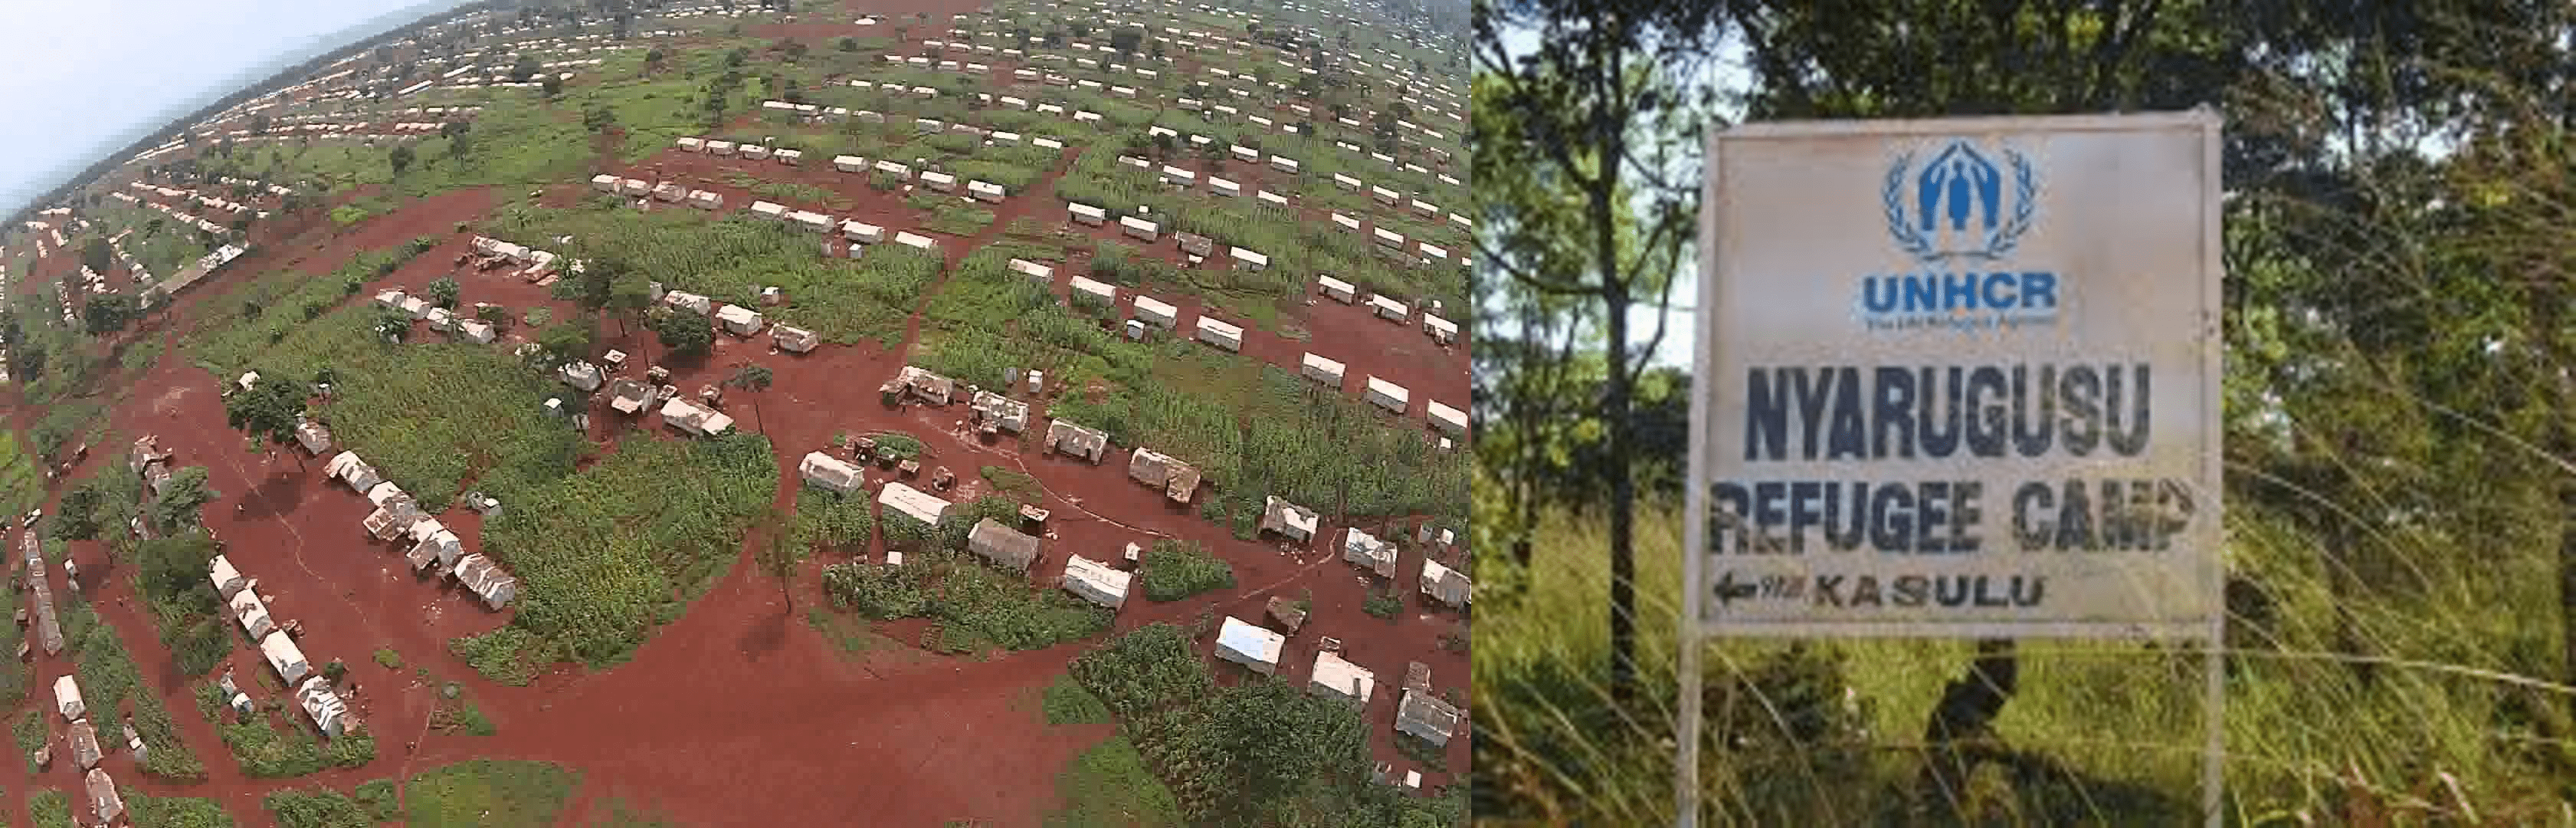 Tanzanie : Le responsable du camp Nyarugusu déçu du manque de soutien dans ses plans d’imposer le rapatriement aux réfugiés burundais